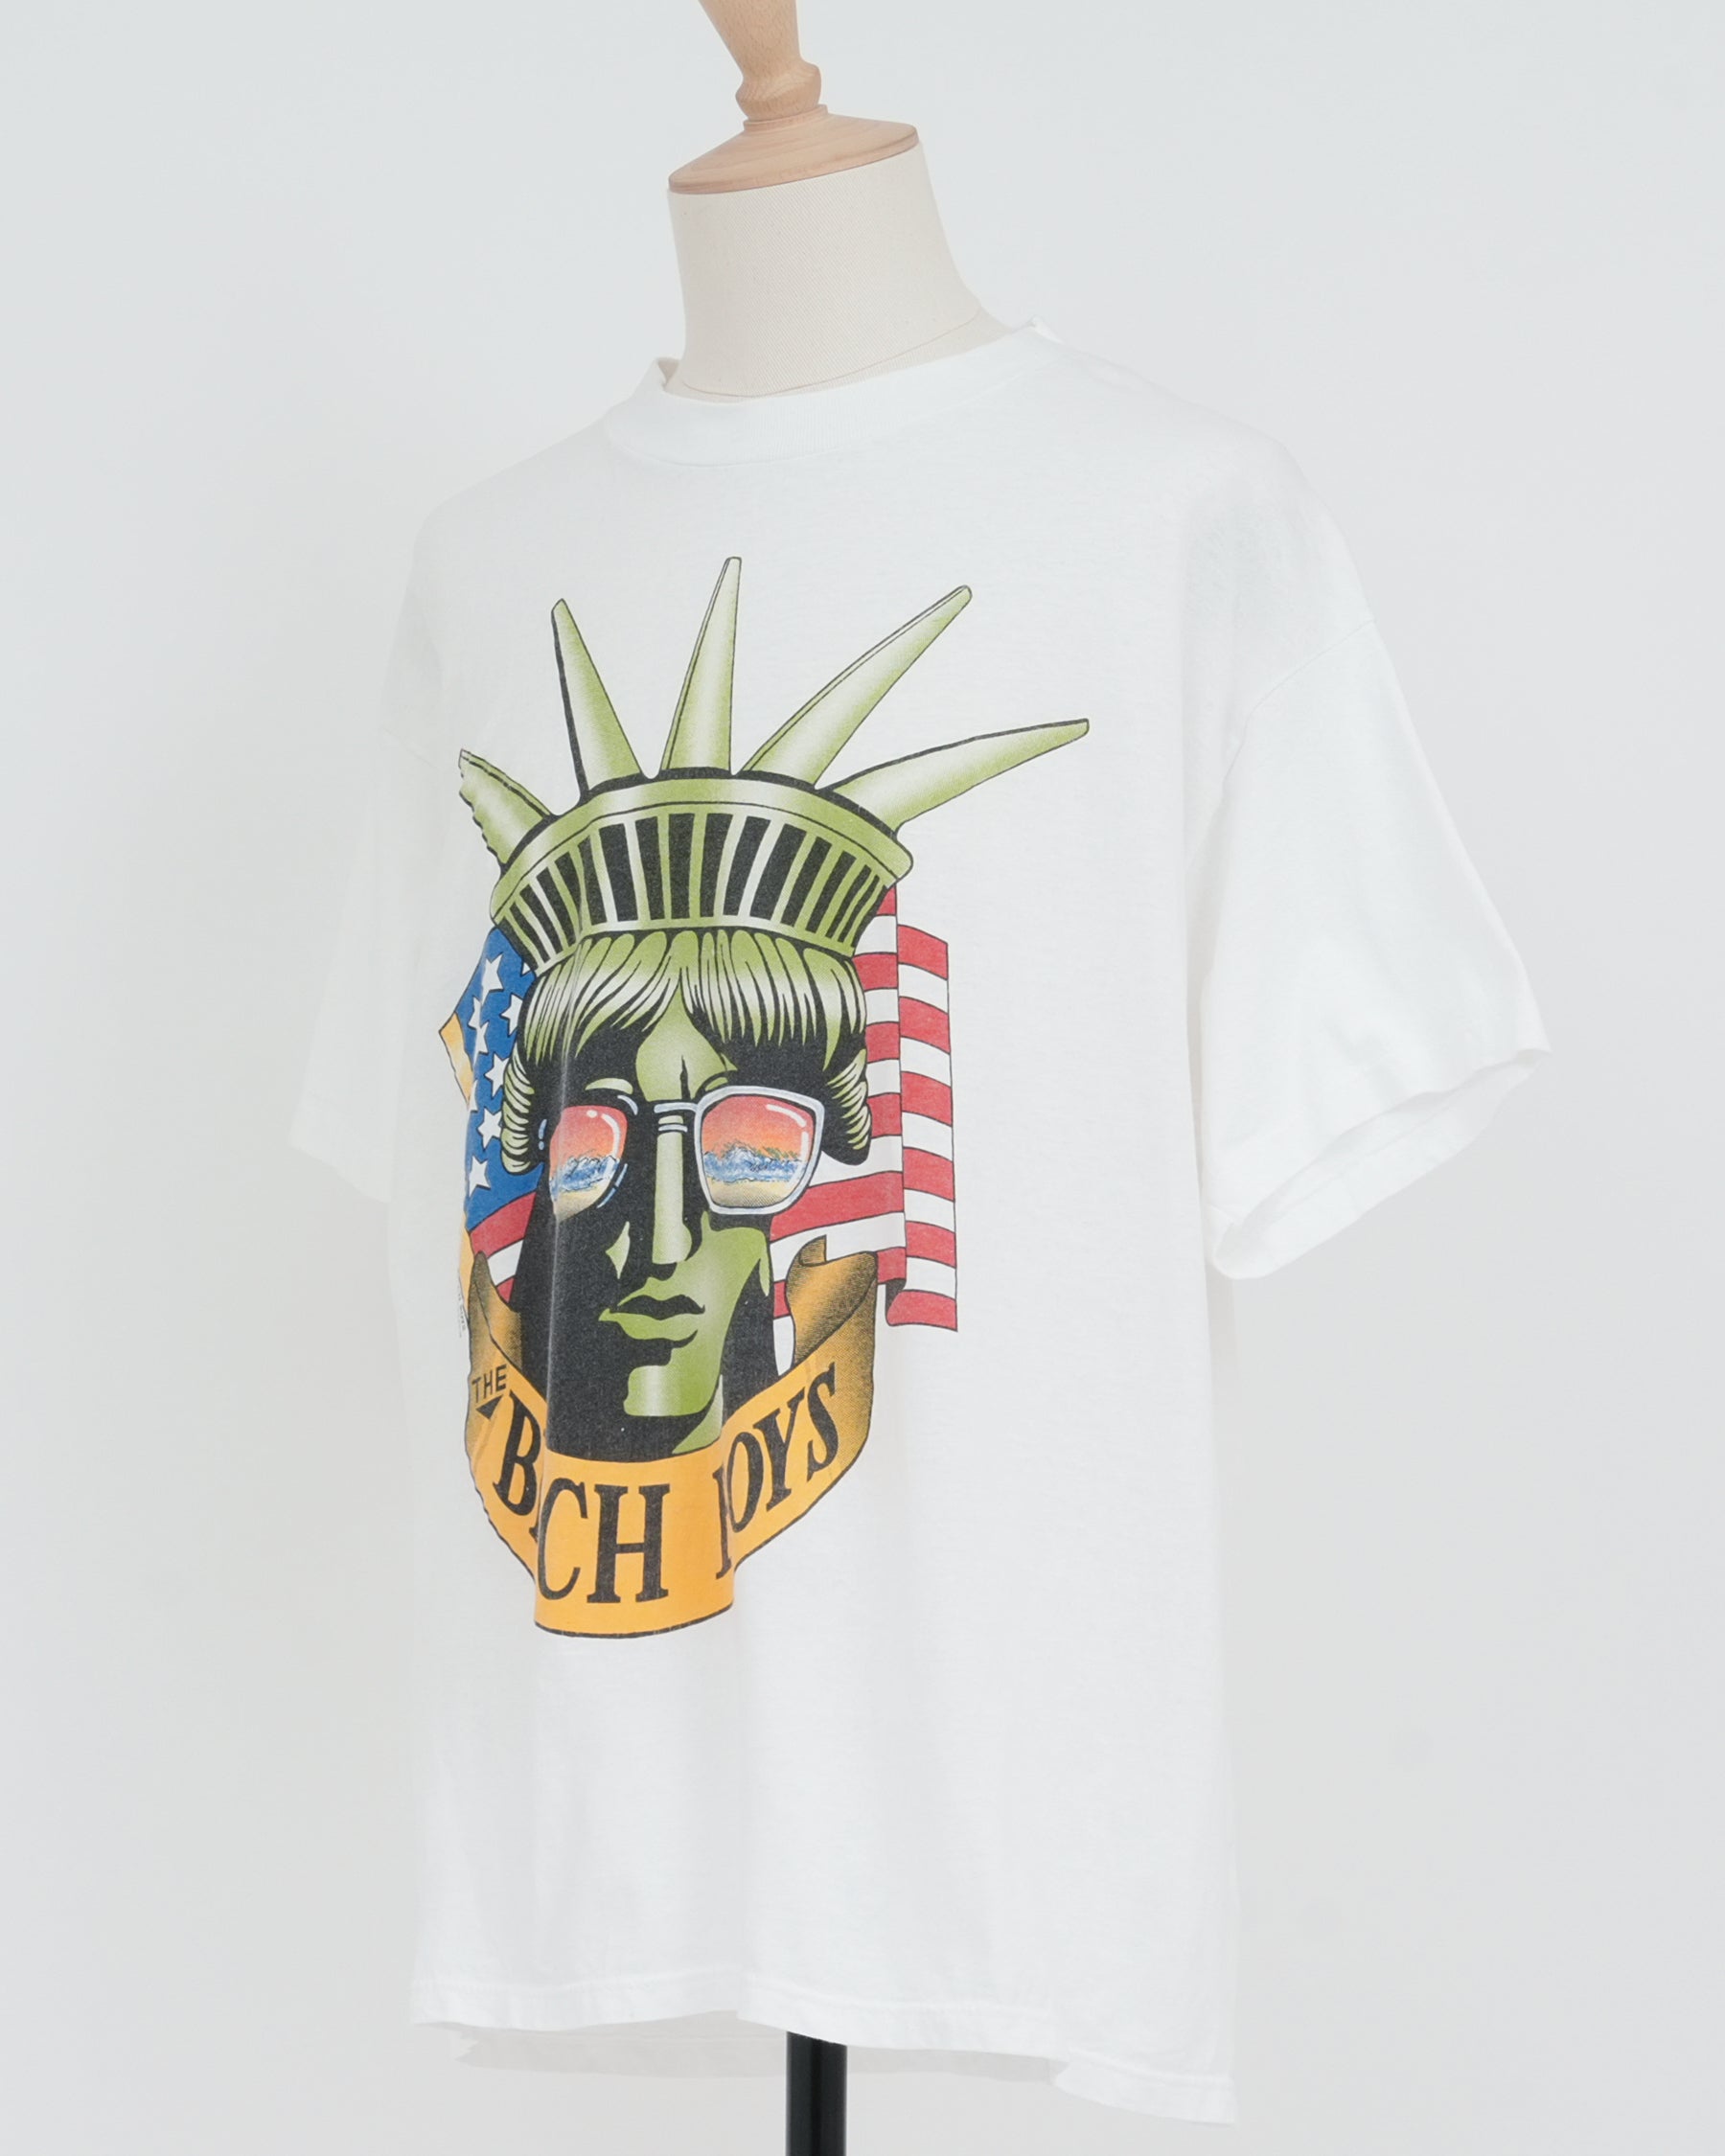 Beach Boys Printed T-shirt